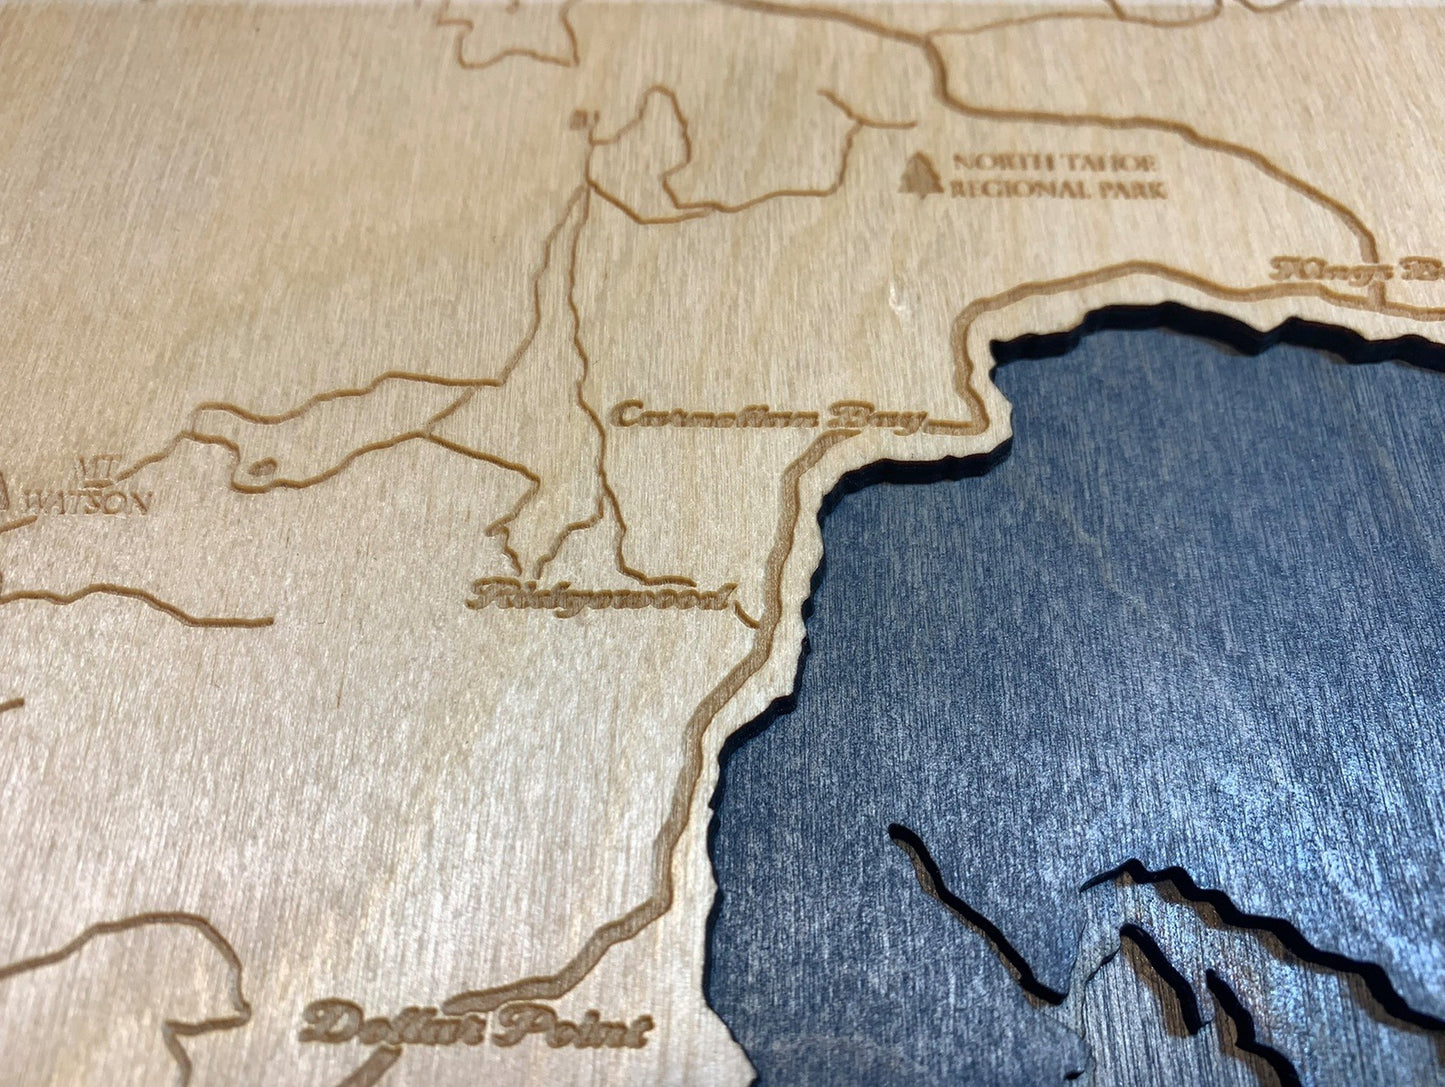 Lake Tahoe Lake Map, Large 12" x 16"